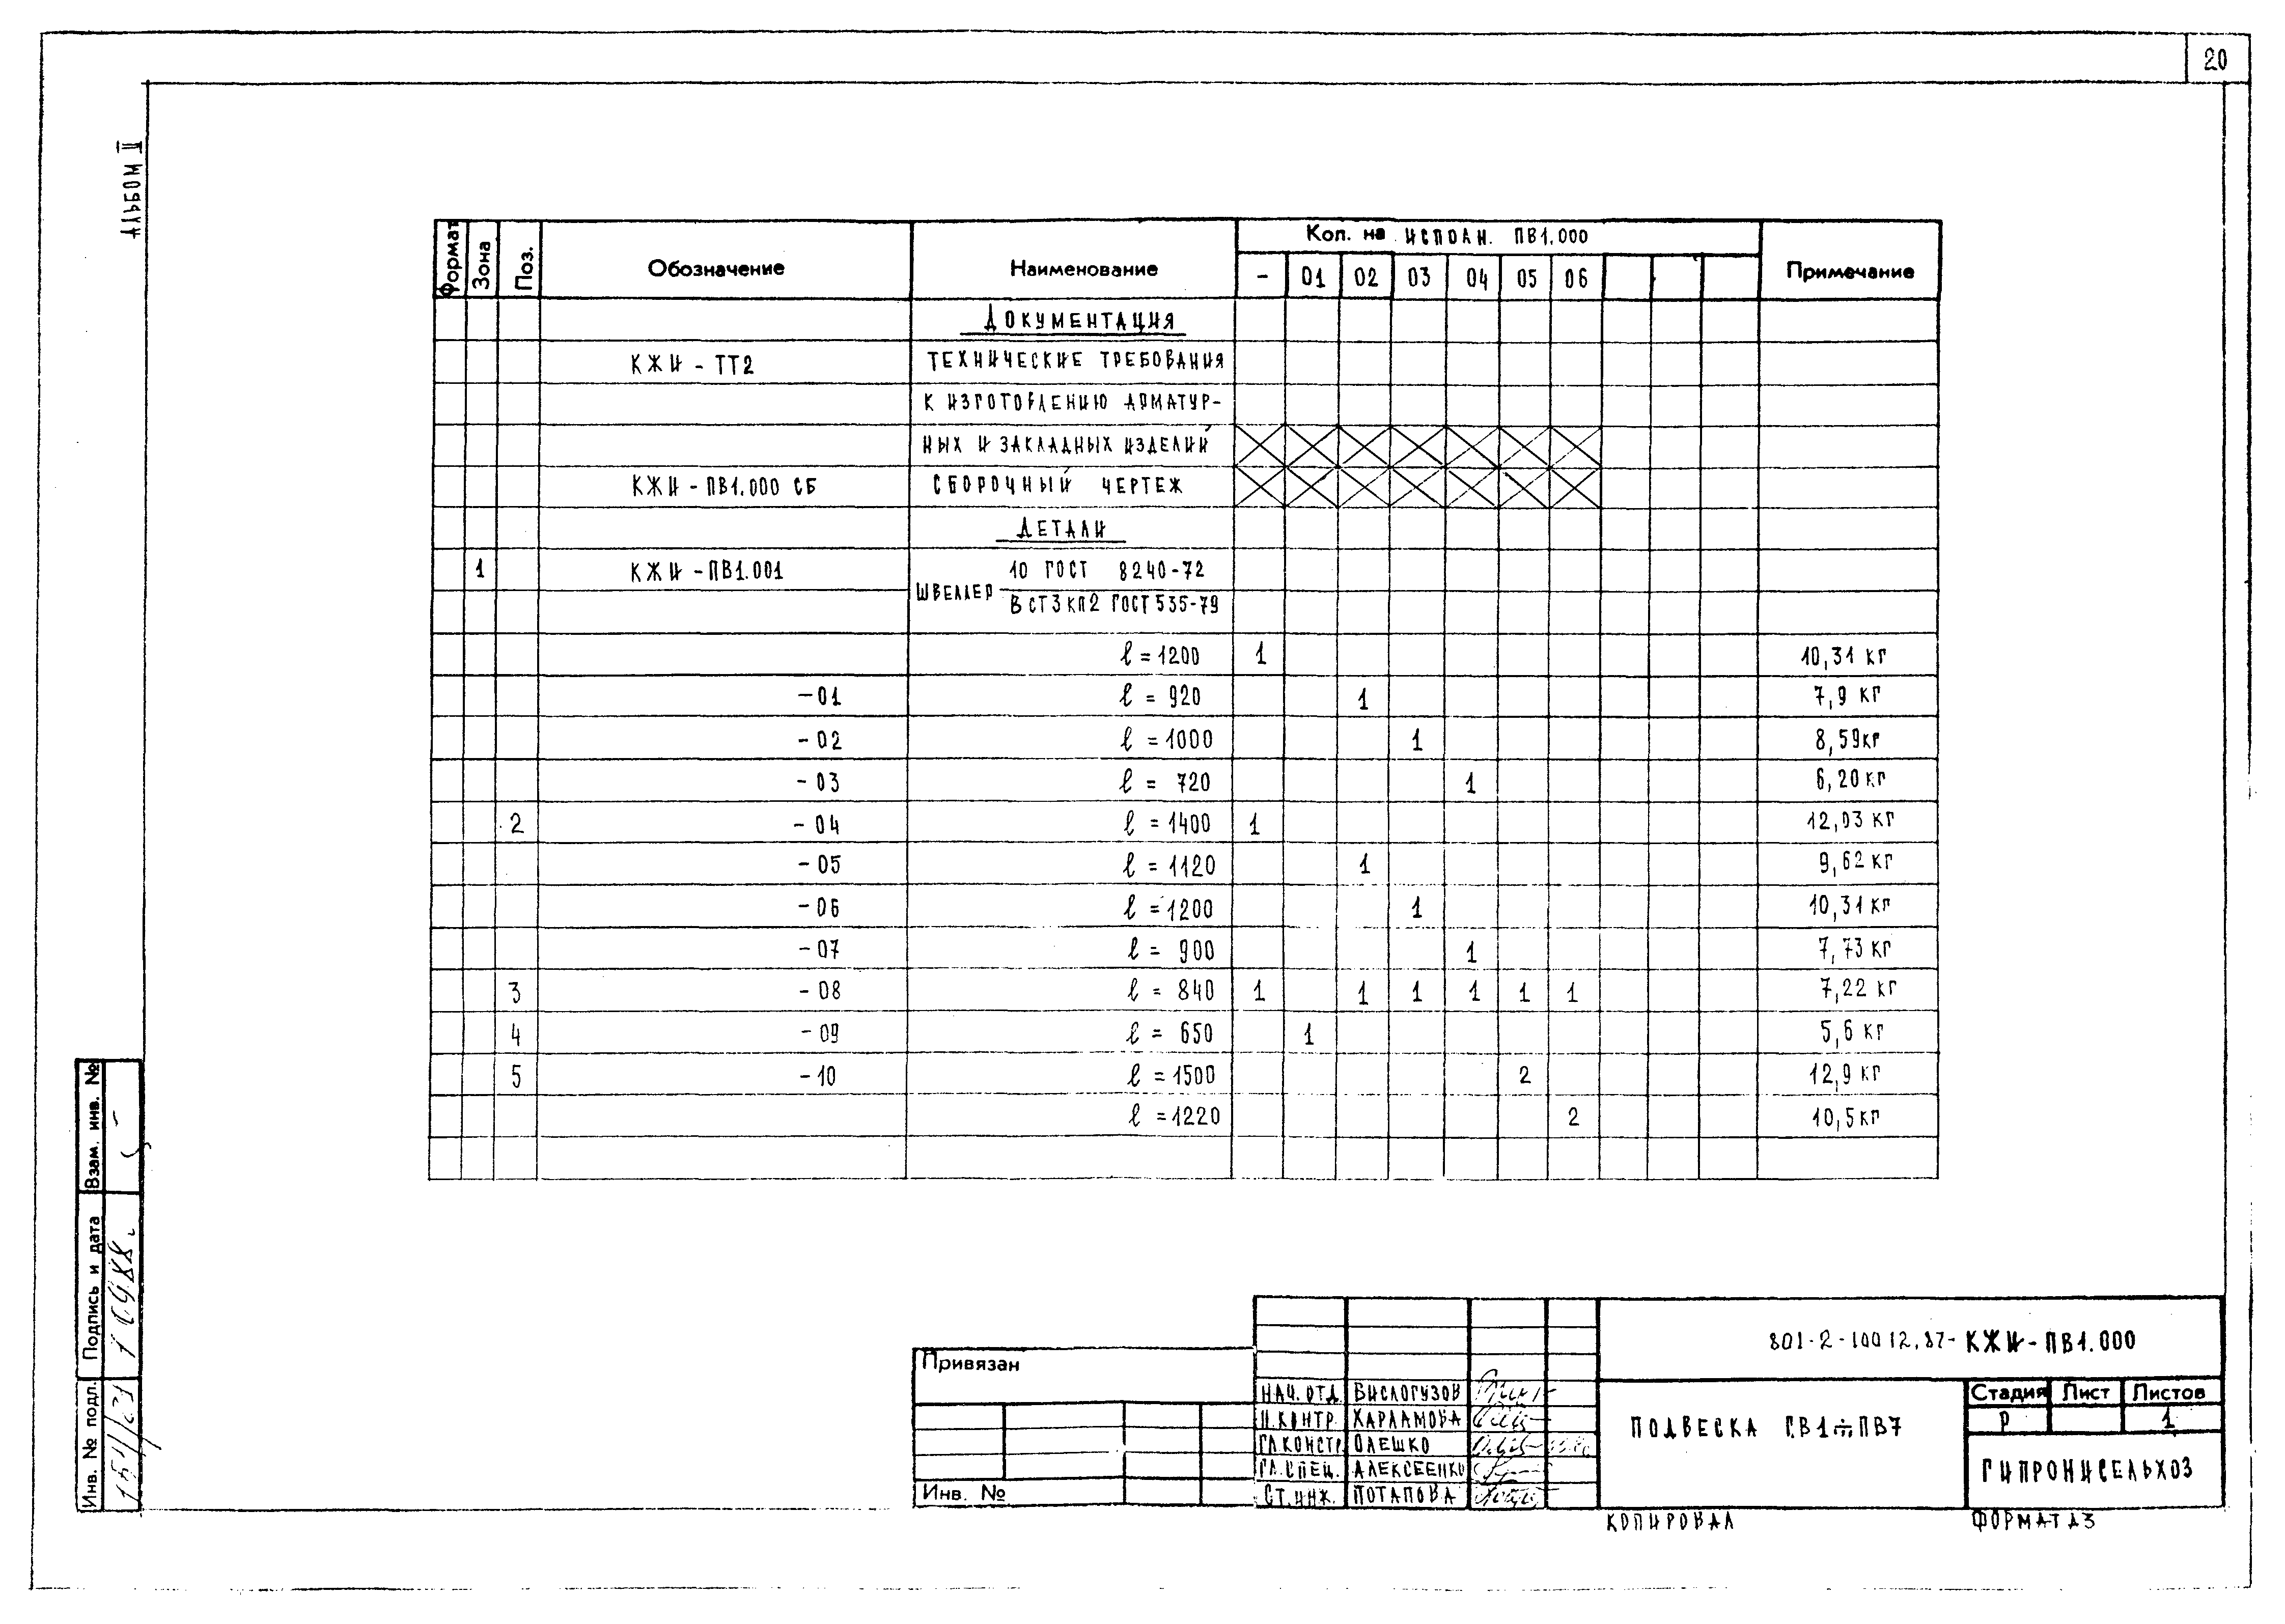 Типовой проект 801-2-101.12.87